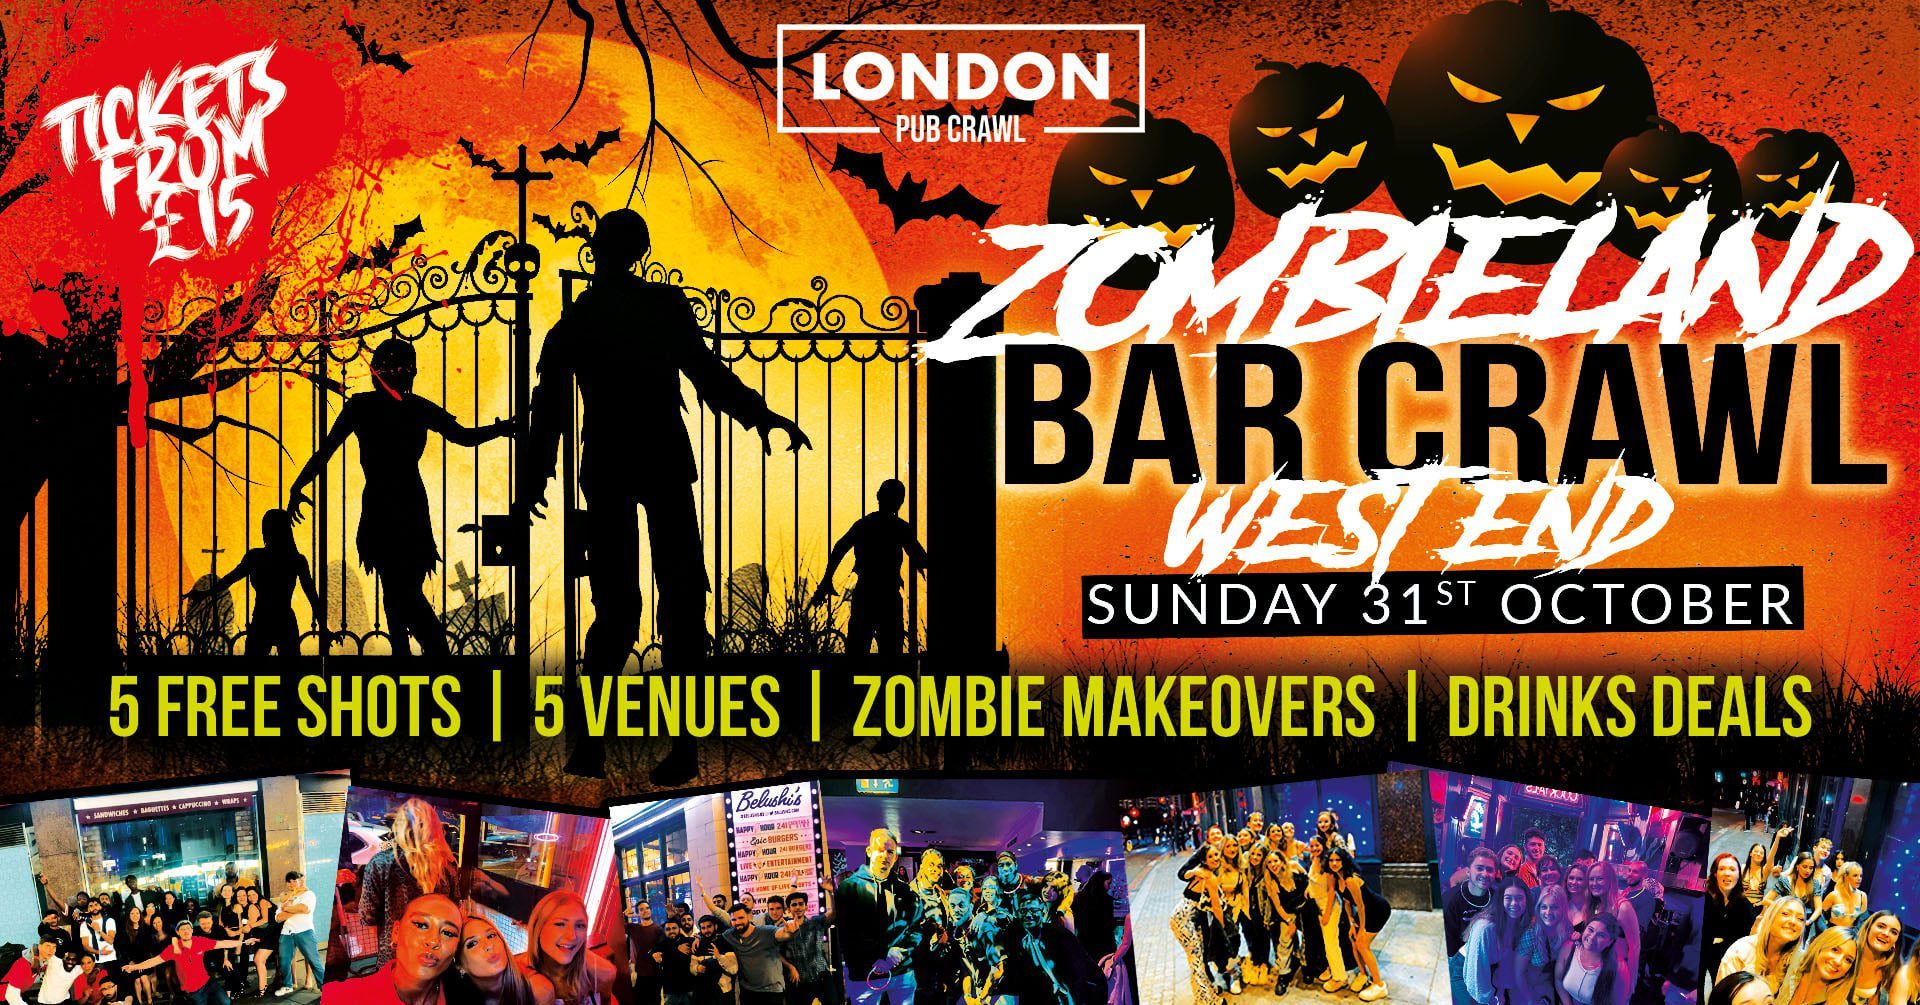 West End Halloween Bar Crawl